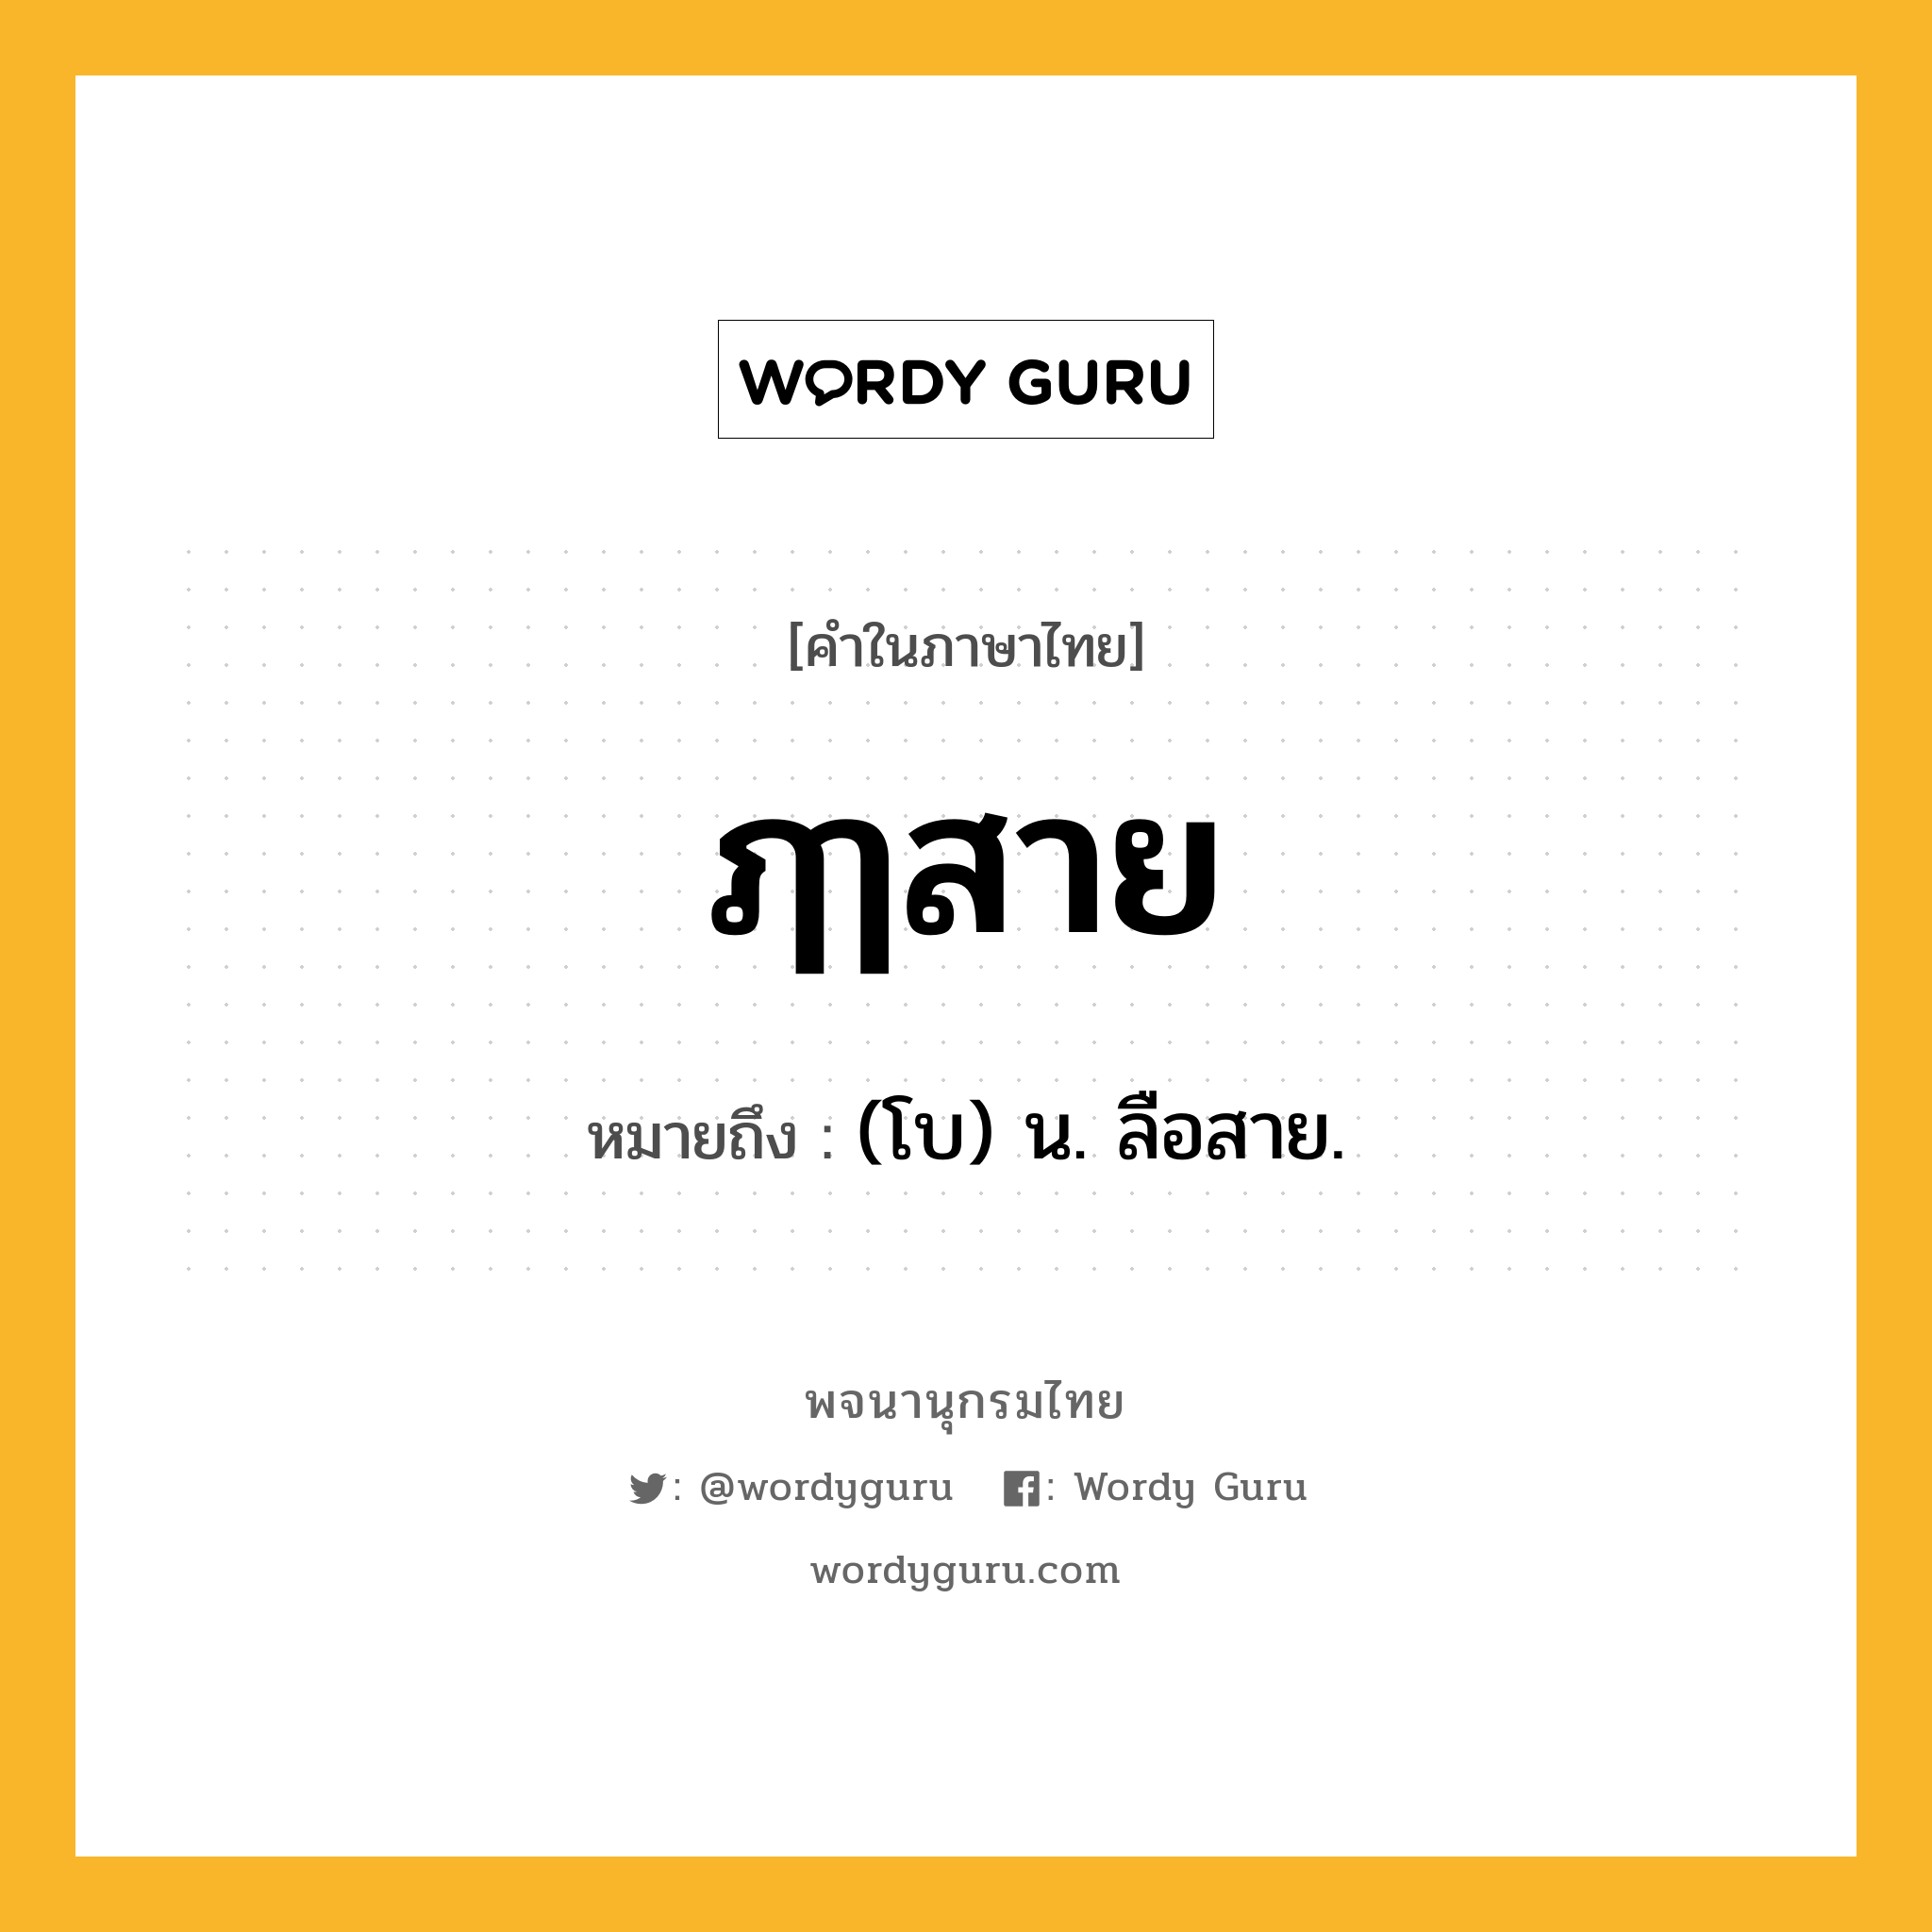 ฦๅสาย ความหมาย หมายถึงอะไร?, คำในภาษาไทย ฦๅสาย หมายถึง (โบ) น. ลือสาย.